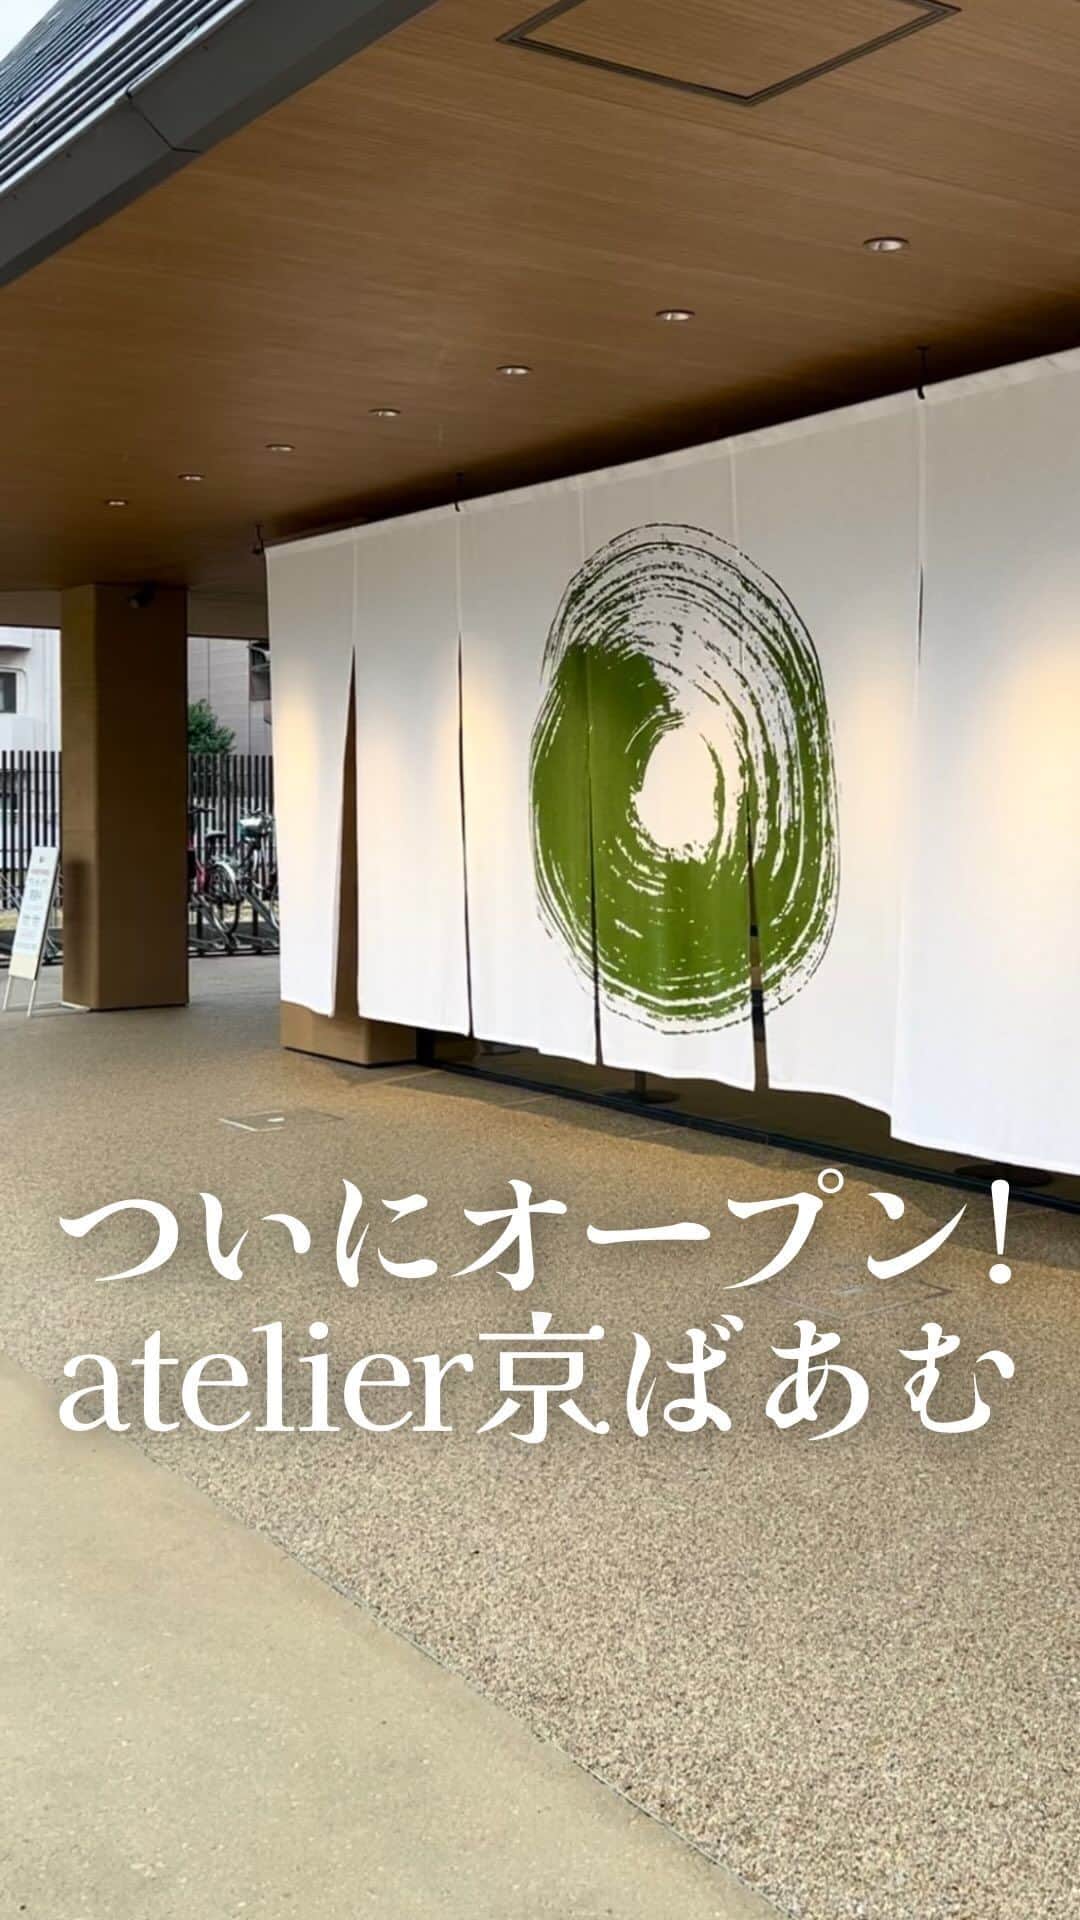 京ばあむ公式のインスタグラム：「\ atelier京ばあむ グランドオープン！ /  いつも京ばあむ公式アカウントを ご覧いただきありがとうございます😊  以前より皆さまにご紹介しておりました 京都最大級となるお菓子のミュージアム ✨✨✨atelier京ばあむ✨✨✨  この度ついに・・・‼️‼️  2023年11月11日(土)に グランドオープンいたしました🎉🎉🎉  「オープン日が待ち遠しい！」 「新しい商品が気になる！」など 嬉しいお声をたくさんいただき ありがとうございます🥹💕  皆さまから愛される施設を目指し、 スタッフ一同準備を進めてまいりました💪🏻💪🏻  今回はついにグランドオープンを迎えた 「atelier京ばあむ」の全容をご紹介します😎🌟  ・  ≪ 1階 ≫ 🛍️ショップ エントランスを入ると シンボルツリーの「トチの木」がお出迎え🌲  店内は “京都” や “抹茶” 、 “バームクーヘン” をモチーフとした 開放的な空間が広がっています🕊️✨✨  atelier京ばあむ限定商品やグッズなど バリエーションも豊富にご用意しております🙌🏻  ≪2階≫ 🧑🏻‍🍳京ばあむFactory まずは京ばあむのおいしさの秘密や 出来るまでの様子を触れる展示で解説！🔍🧑🏻‍🎓  奥に進むと、実際に職人たちが 1つ1つ丁寧に焼き上げる様子を 近くで見学できます👀❣️  秘技 “フォンダン掛け” もお見逃しなく😉  ≪3階≫ ☕️京ばあむCafe 工場見学を終えたら、 京ばあむの中を通り抜けるようなトンネル階段が😳  のぼった先に広がるのは・・・  京ばあむを使ったスイーツや こだわりのパン🍞🥐を使用した サンドウィッチが楽しめるカフェ✨✨  芝生のある開放的なテラスまで...！🫣 お子さま連れのお客さまにも安心して お過ごしいただけます💚  ・  「atelier京ばあむ」には まだまだ見どころポイントがたくさん🤩‼️  商品やカフェメニュー、施設の詳細は これからどんどん発信してまいりますので ご注目ください👀🌟🌟  京都へお越しの際はぜひ❣️ 「atelier京ばあむ」で 京ばあむの世界をご堪能くださいませ💚  皆さまのご来店を心よりお待ちしております😊✨✨  -----------📝Information----------- 店名：atelier京ばあむ 住所：京都市南区西九条高畠町35-1 TEL ：075-585-3795 営業時間： [1・2階] 10:00～18:00 [3階カフェ] 11:00～18:00（L.O.17:30） 定休日：3階カフェのみ火曜定休 駐車場：あり🚙 -------------------------------------  ・  \ 京ばあむのご購入場所は… /  01. 京ばあむ専門店や京都のお土産屋さんで！  02. 公式オンラインショップで！ (実はお取り寄せもできるんです😌)  👇プロフィールURLより 公式オンラインショップをご覧ください✨ @kyo_baum  #atelier京ばあむ #アトリエ京ばあむ#京ばあむ #バームクーヘン #抹茶スイーツ #抹茶 #京都 #京都スイーツ #京都グルメ  #京都土産 #baumkuchen #kyobaum #kyoto #matcha #お取り寄せ #お取り寄せスイーツ #お取り寄せグルメ #おやつ #グランドオープン #新施設 #京都カフェ #工場見学 #子連れおでかけ」